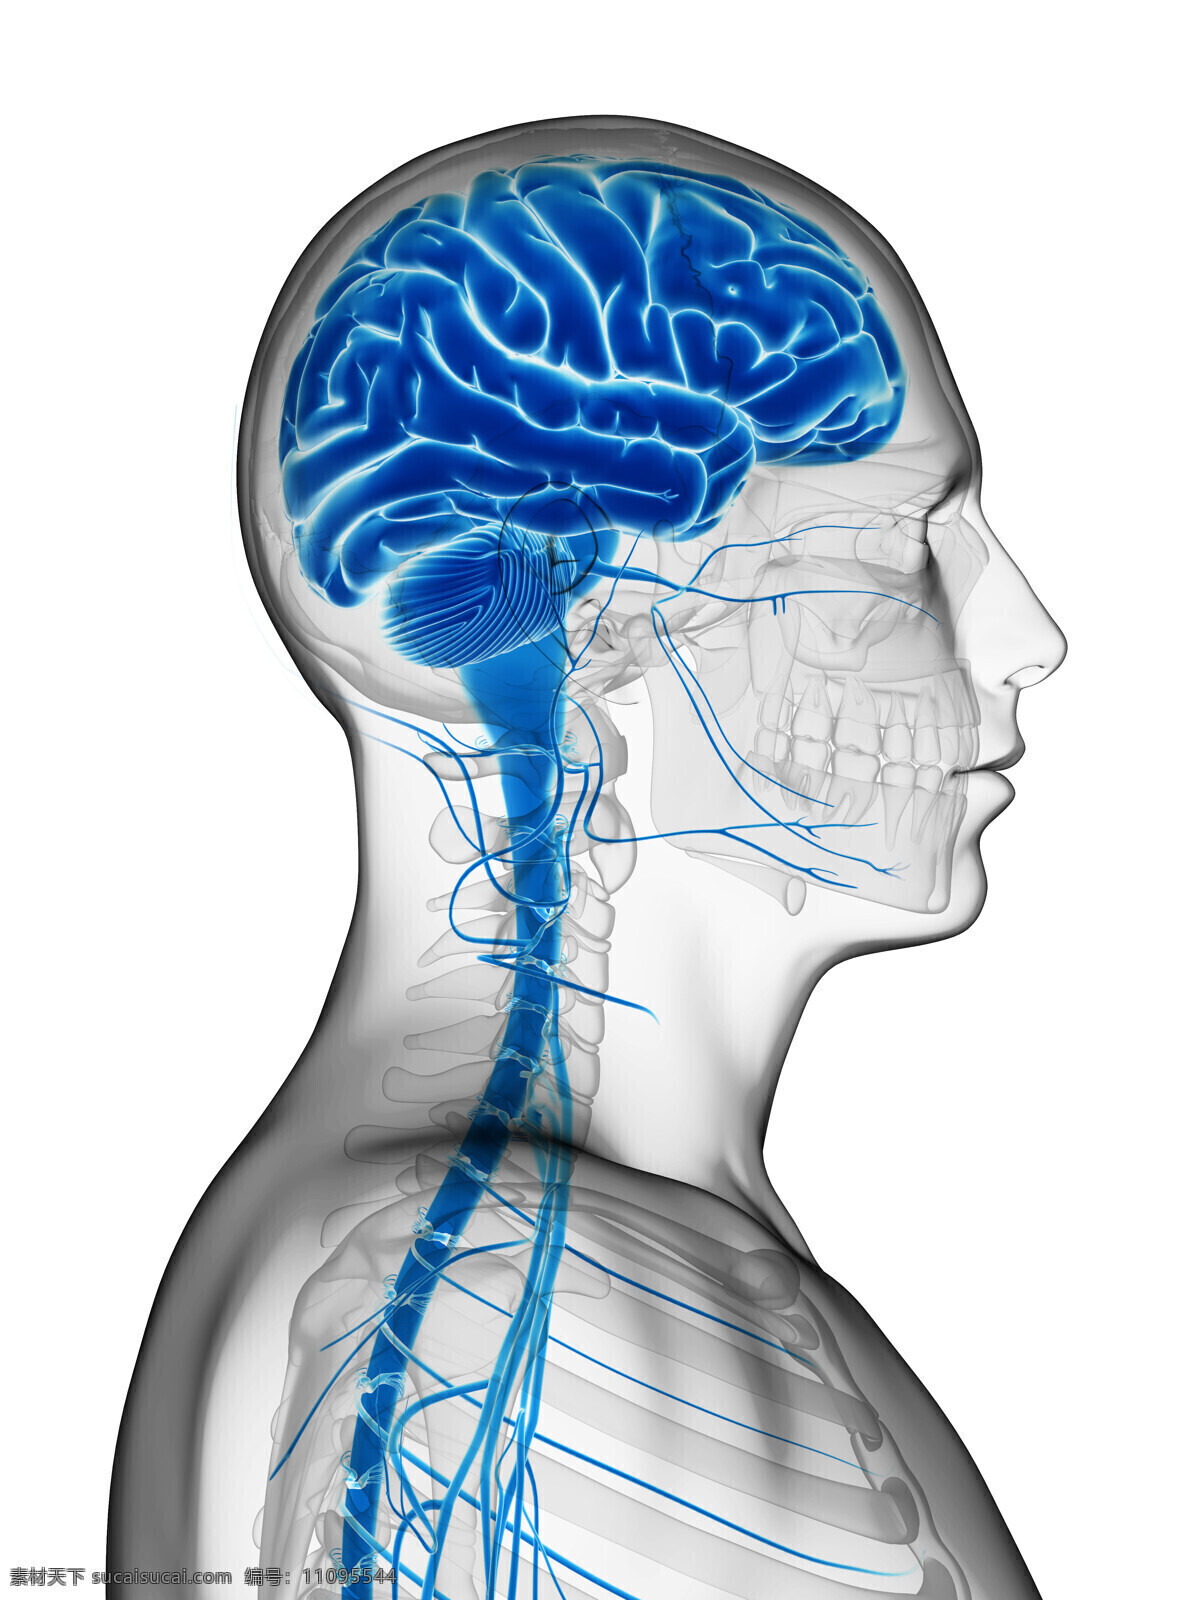 大脑神经 模型 大脑 神经 人体模型 人体结构 人体器官 医学 生物 人体器官图 人物图片